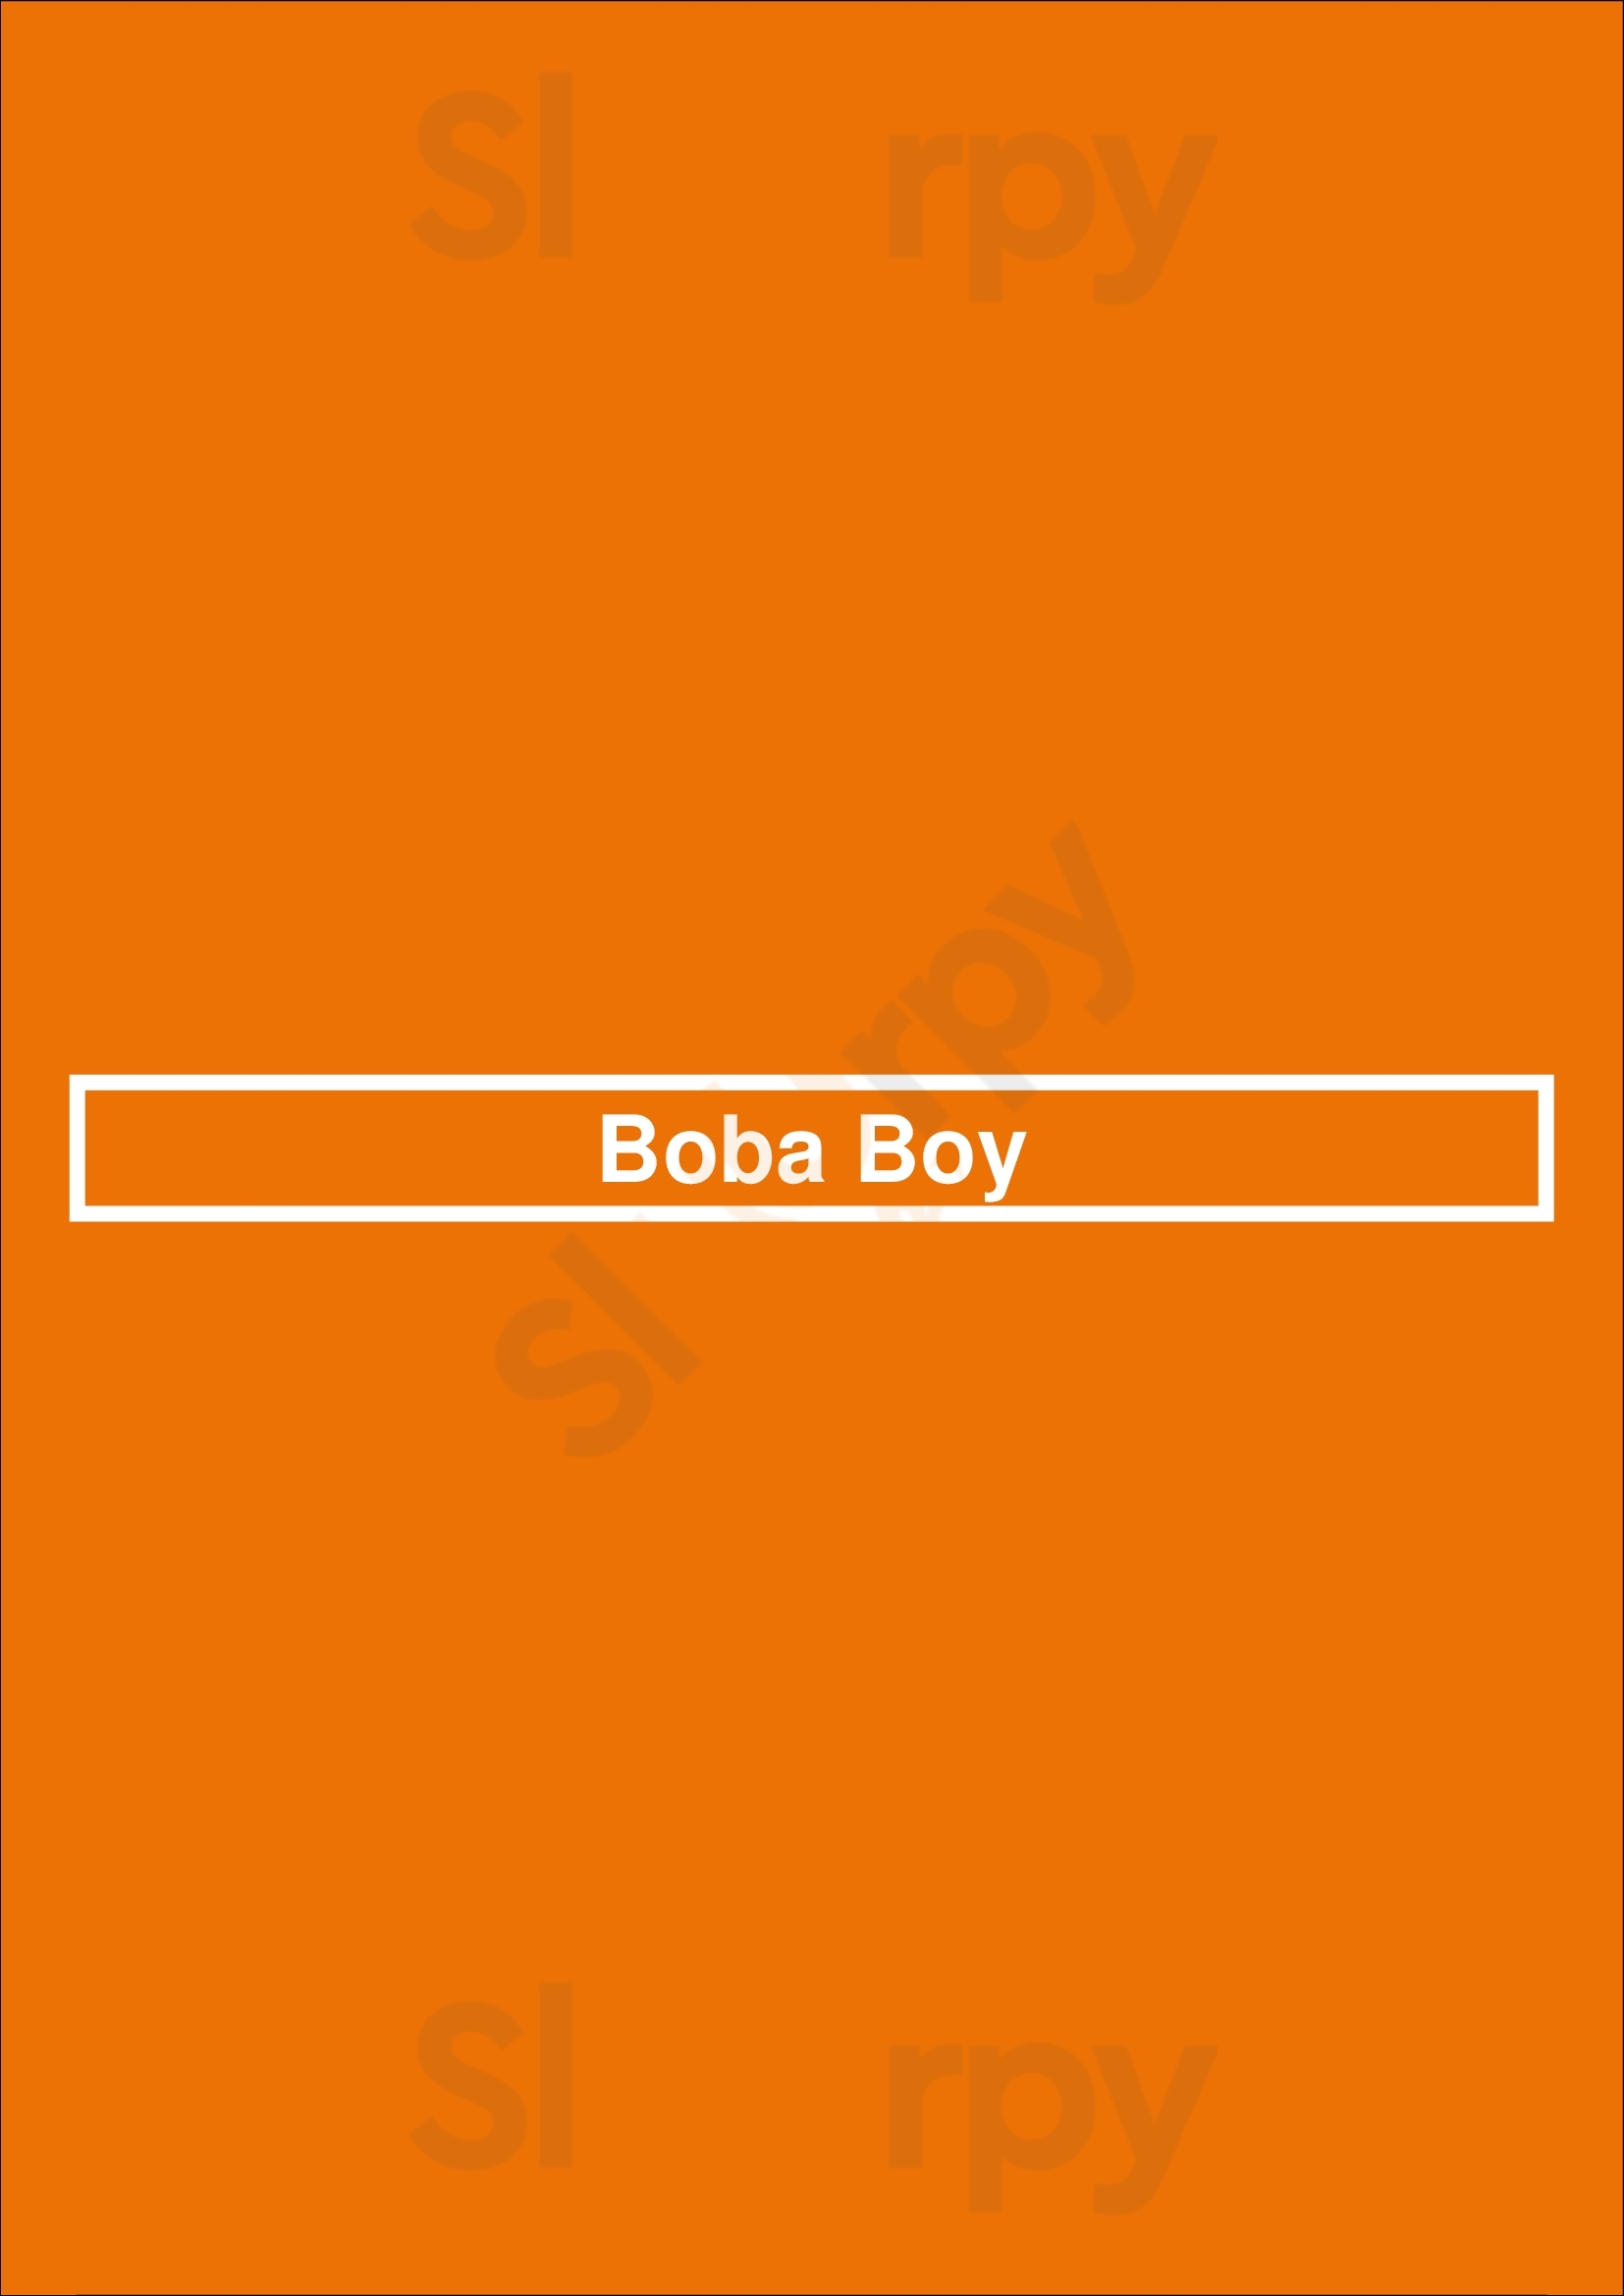 Boba Boy Vancouver Menu - 1